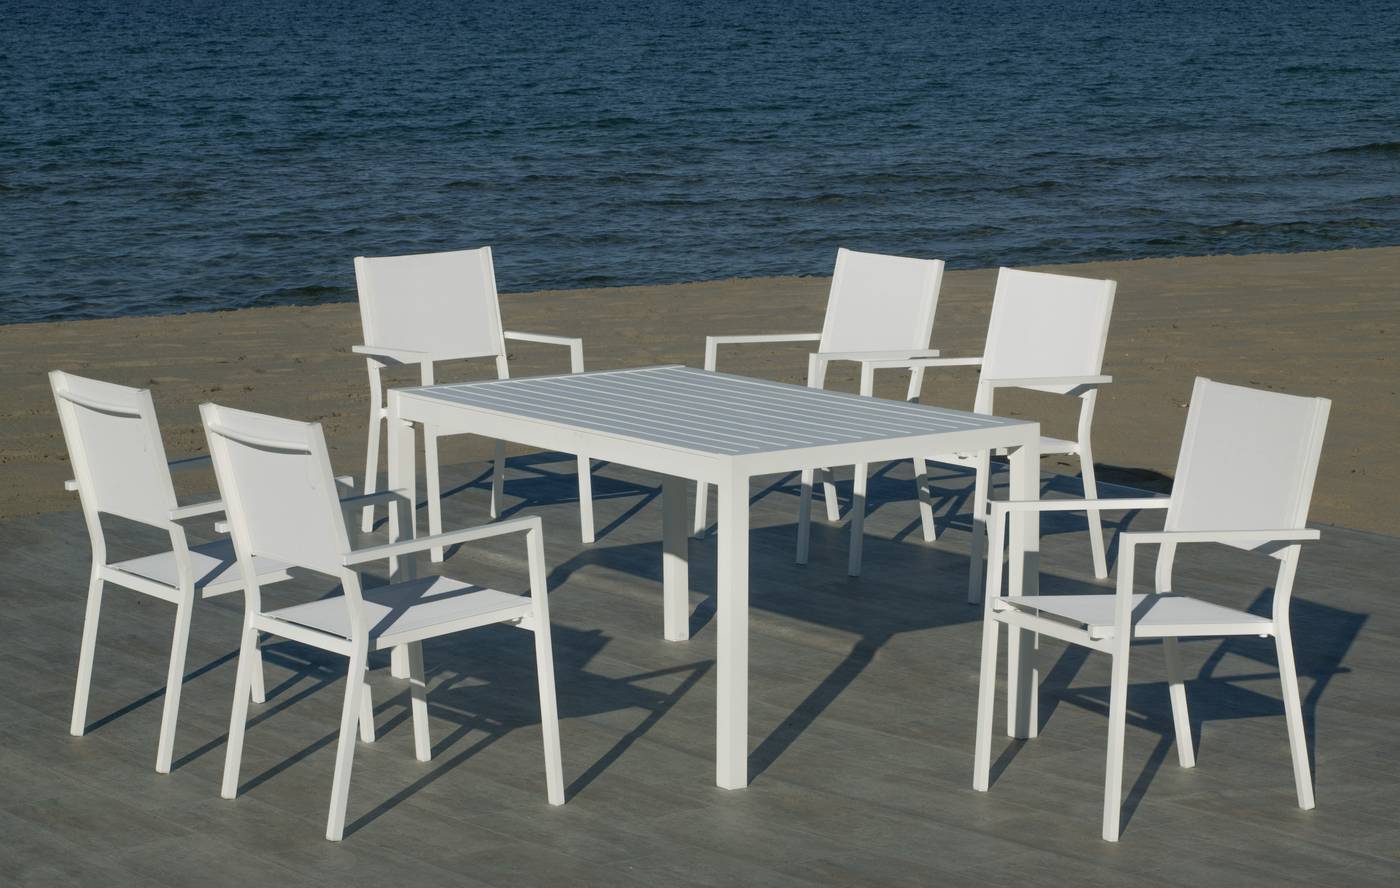 Conjunto de aluminio: Mesa de comedor rectangular de 150 cm. + 4 sillones de textilen. Disponible en color blanco y antracita.